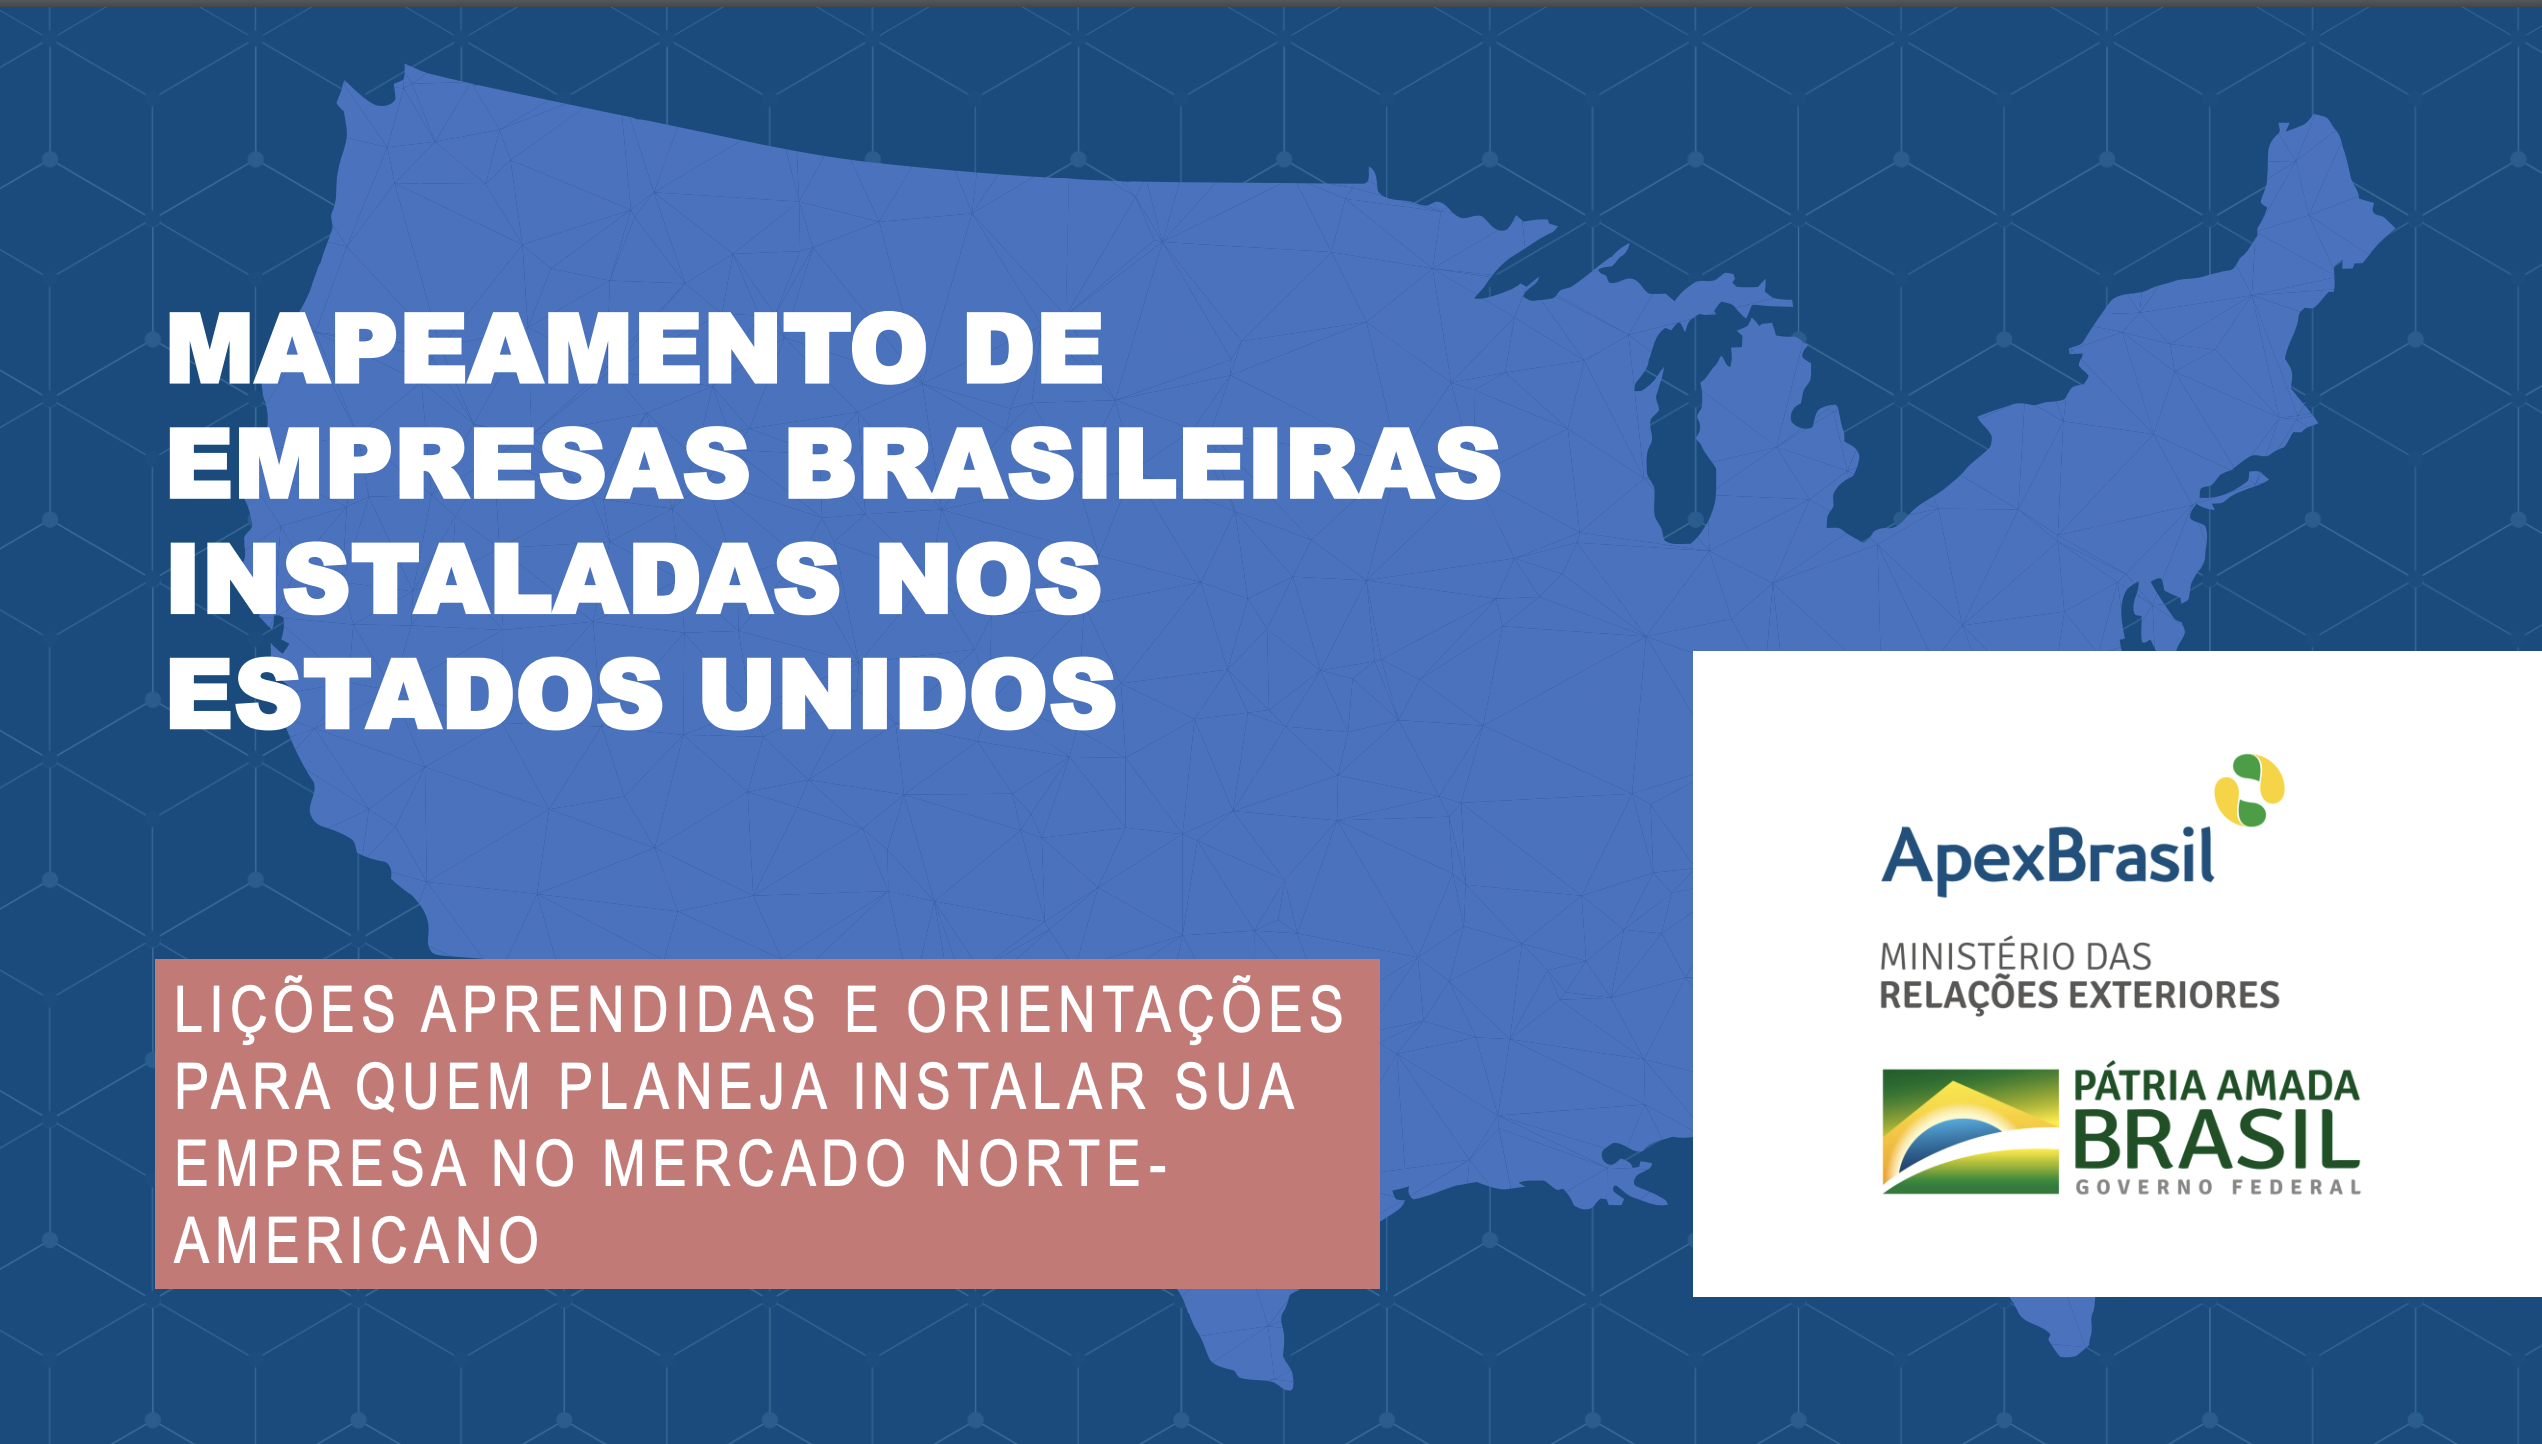 Apex-Brasil realiza estudo sobre empresas brasileiras instaladas nos EUA